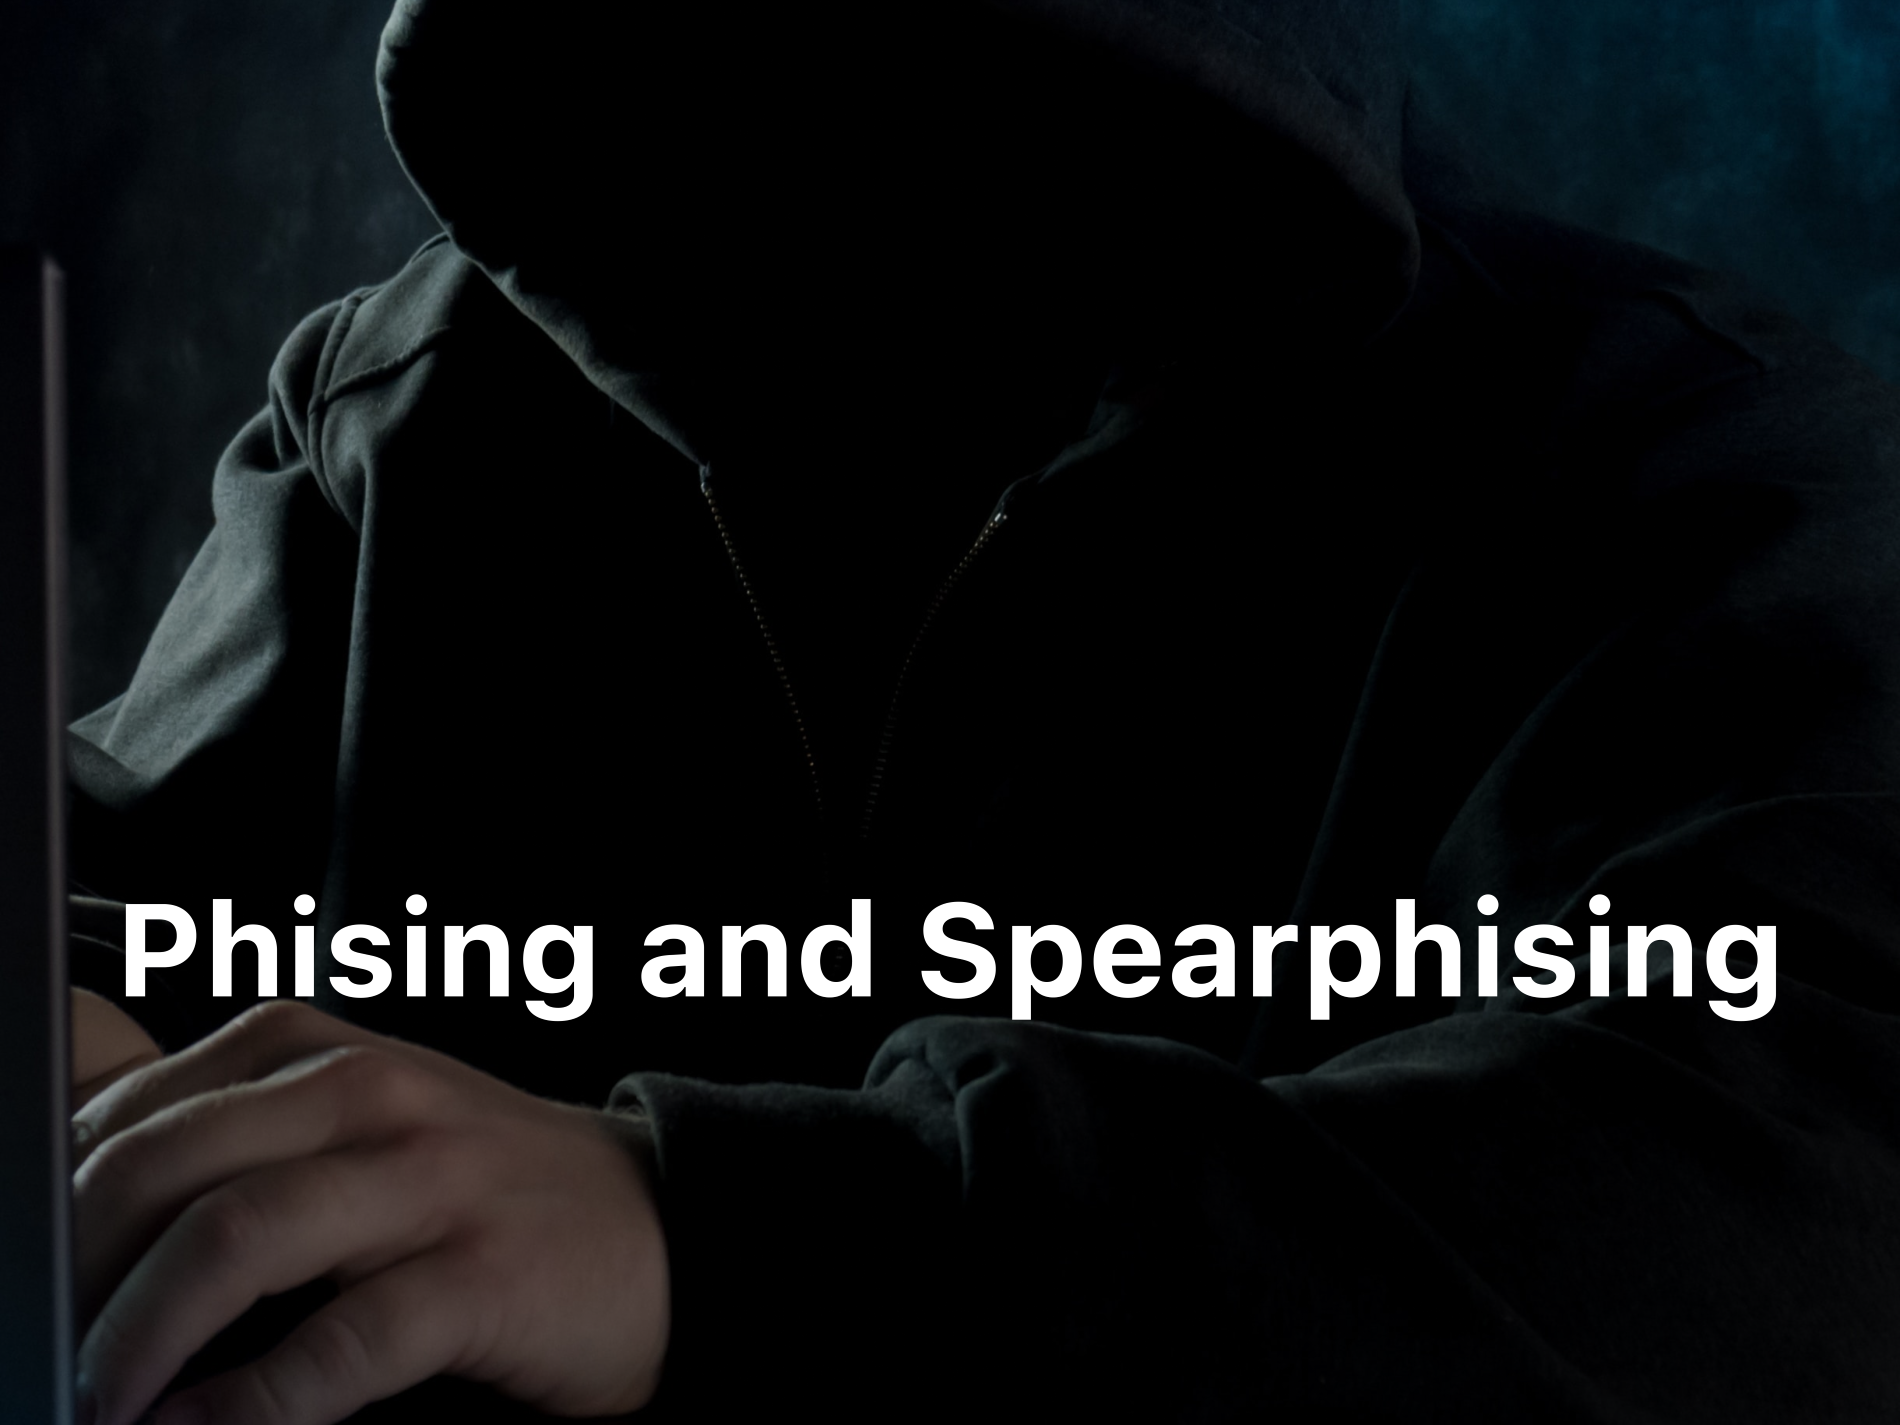 Phishing and spearphising